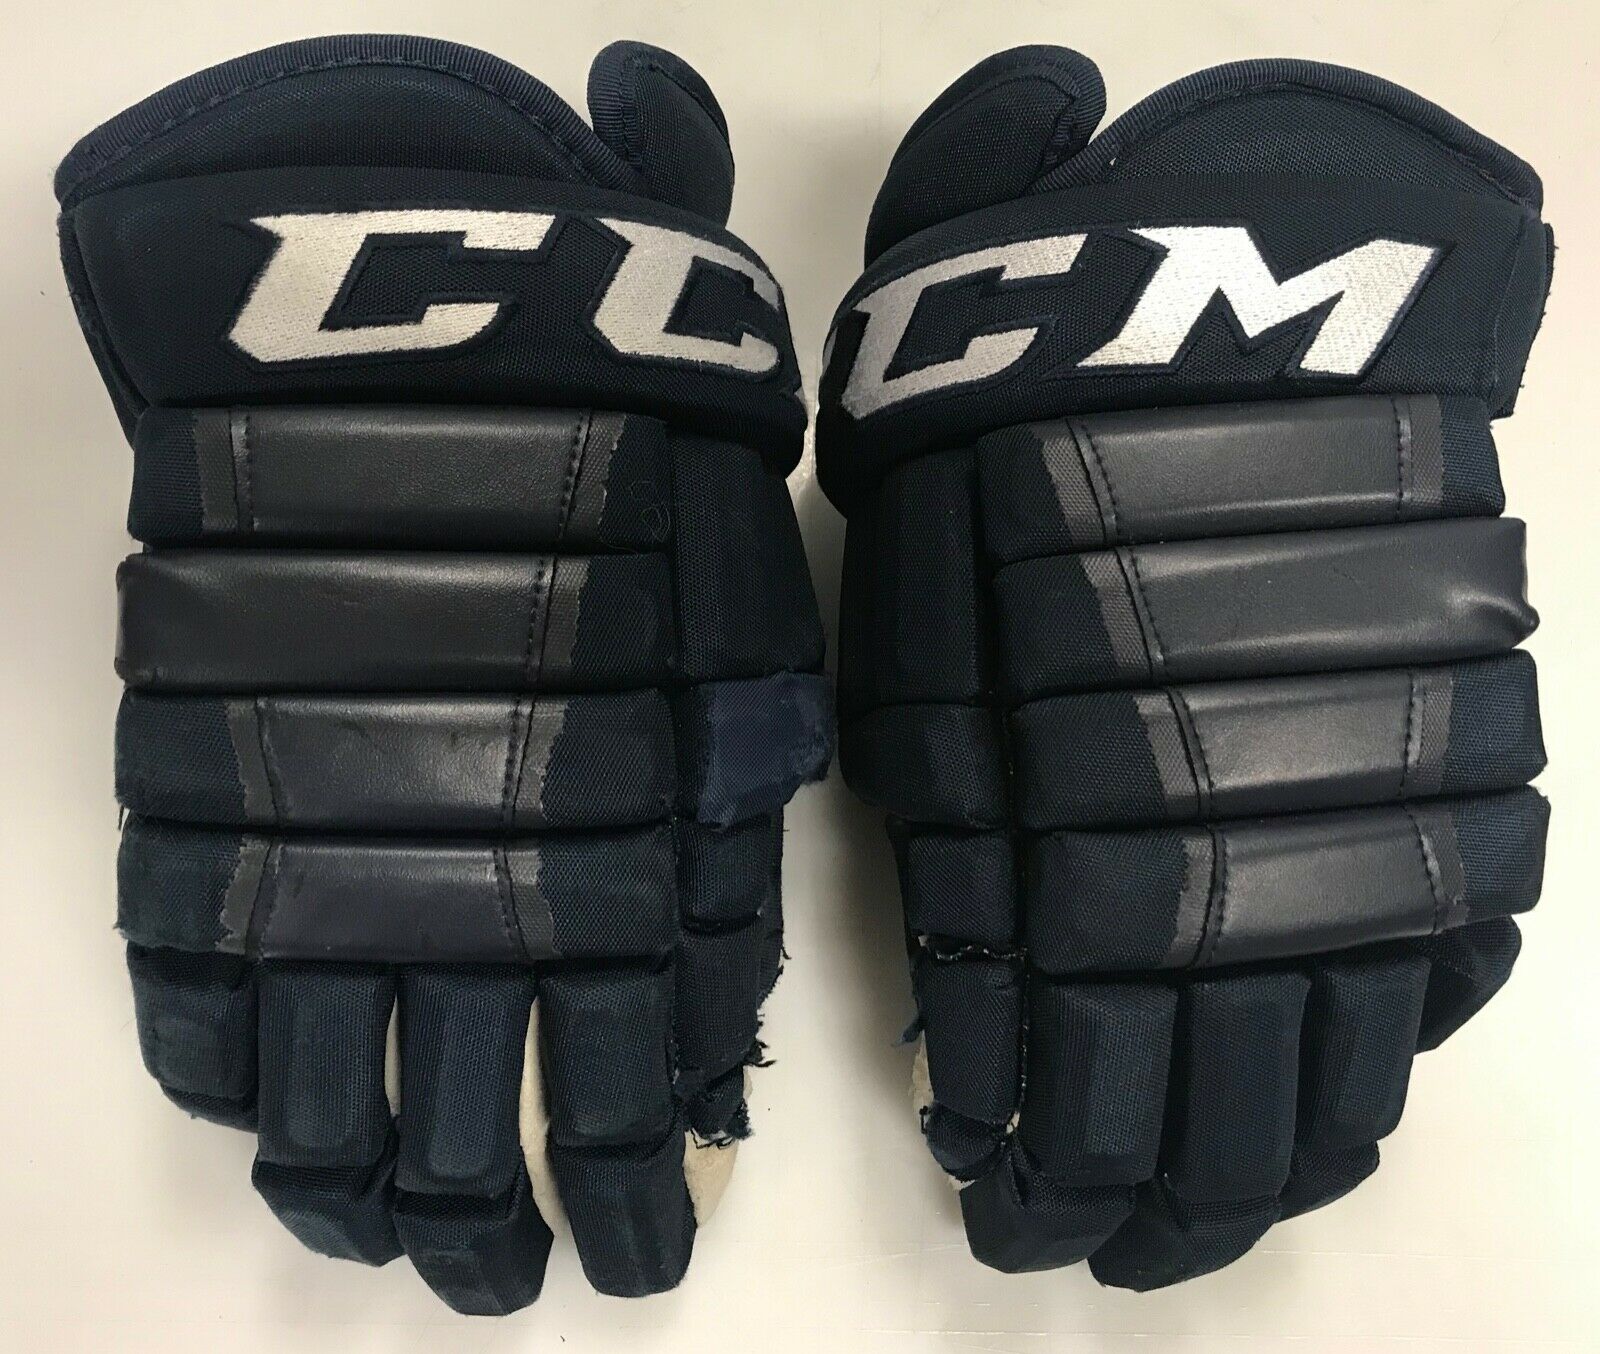 Ccm Hg97 Pro Stock Hockey Gloves 14" Navy Blue  9208